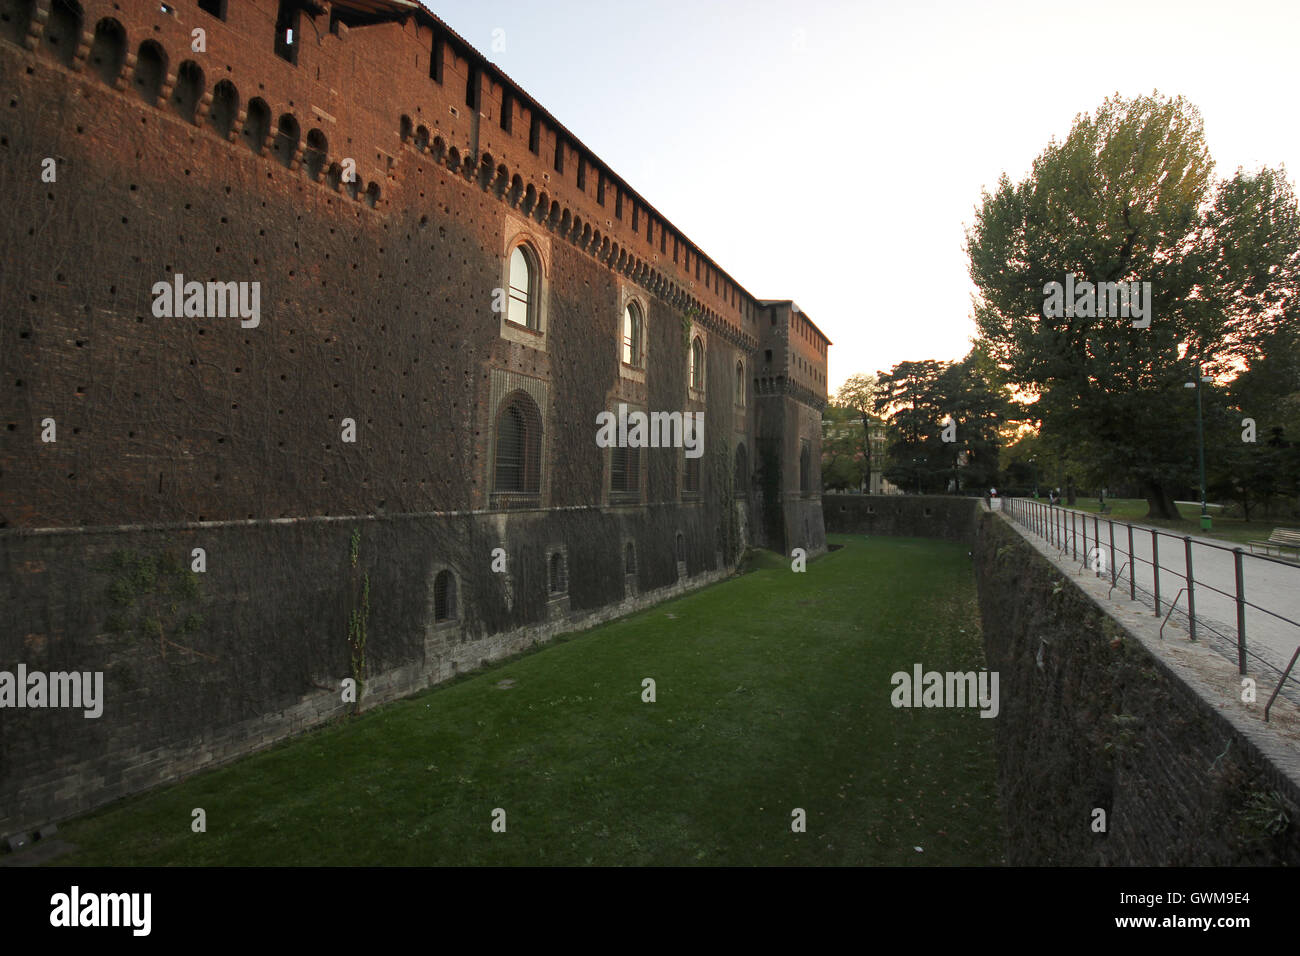 a beautiful view of the walls of the Sforzesco Castle, Milan, Italy, Castello Sforzesco Stock Photo